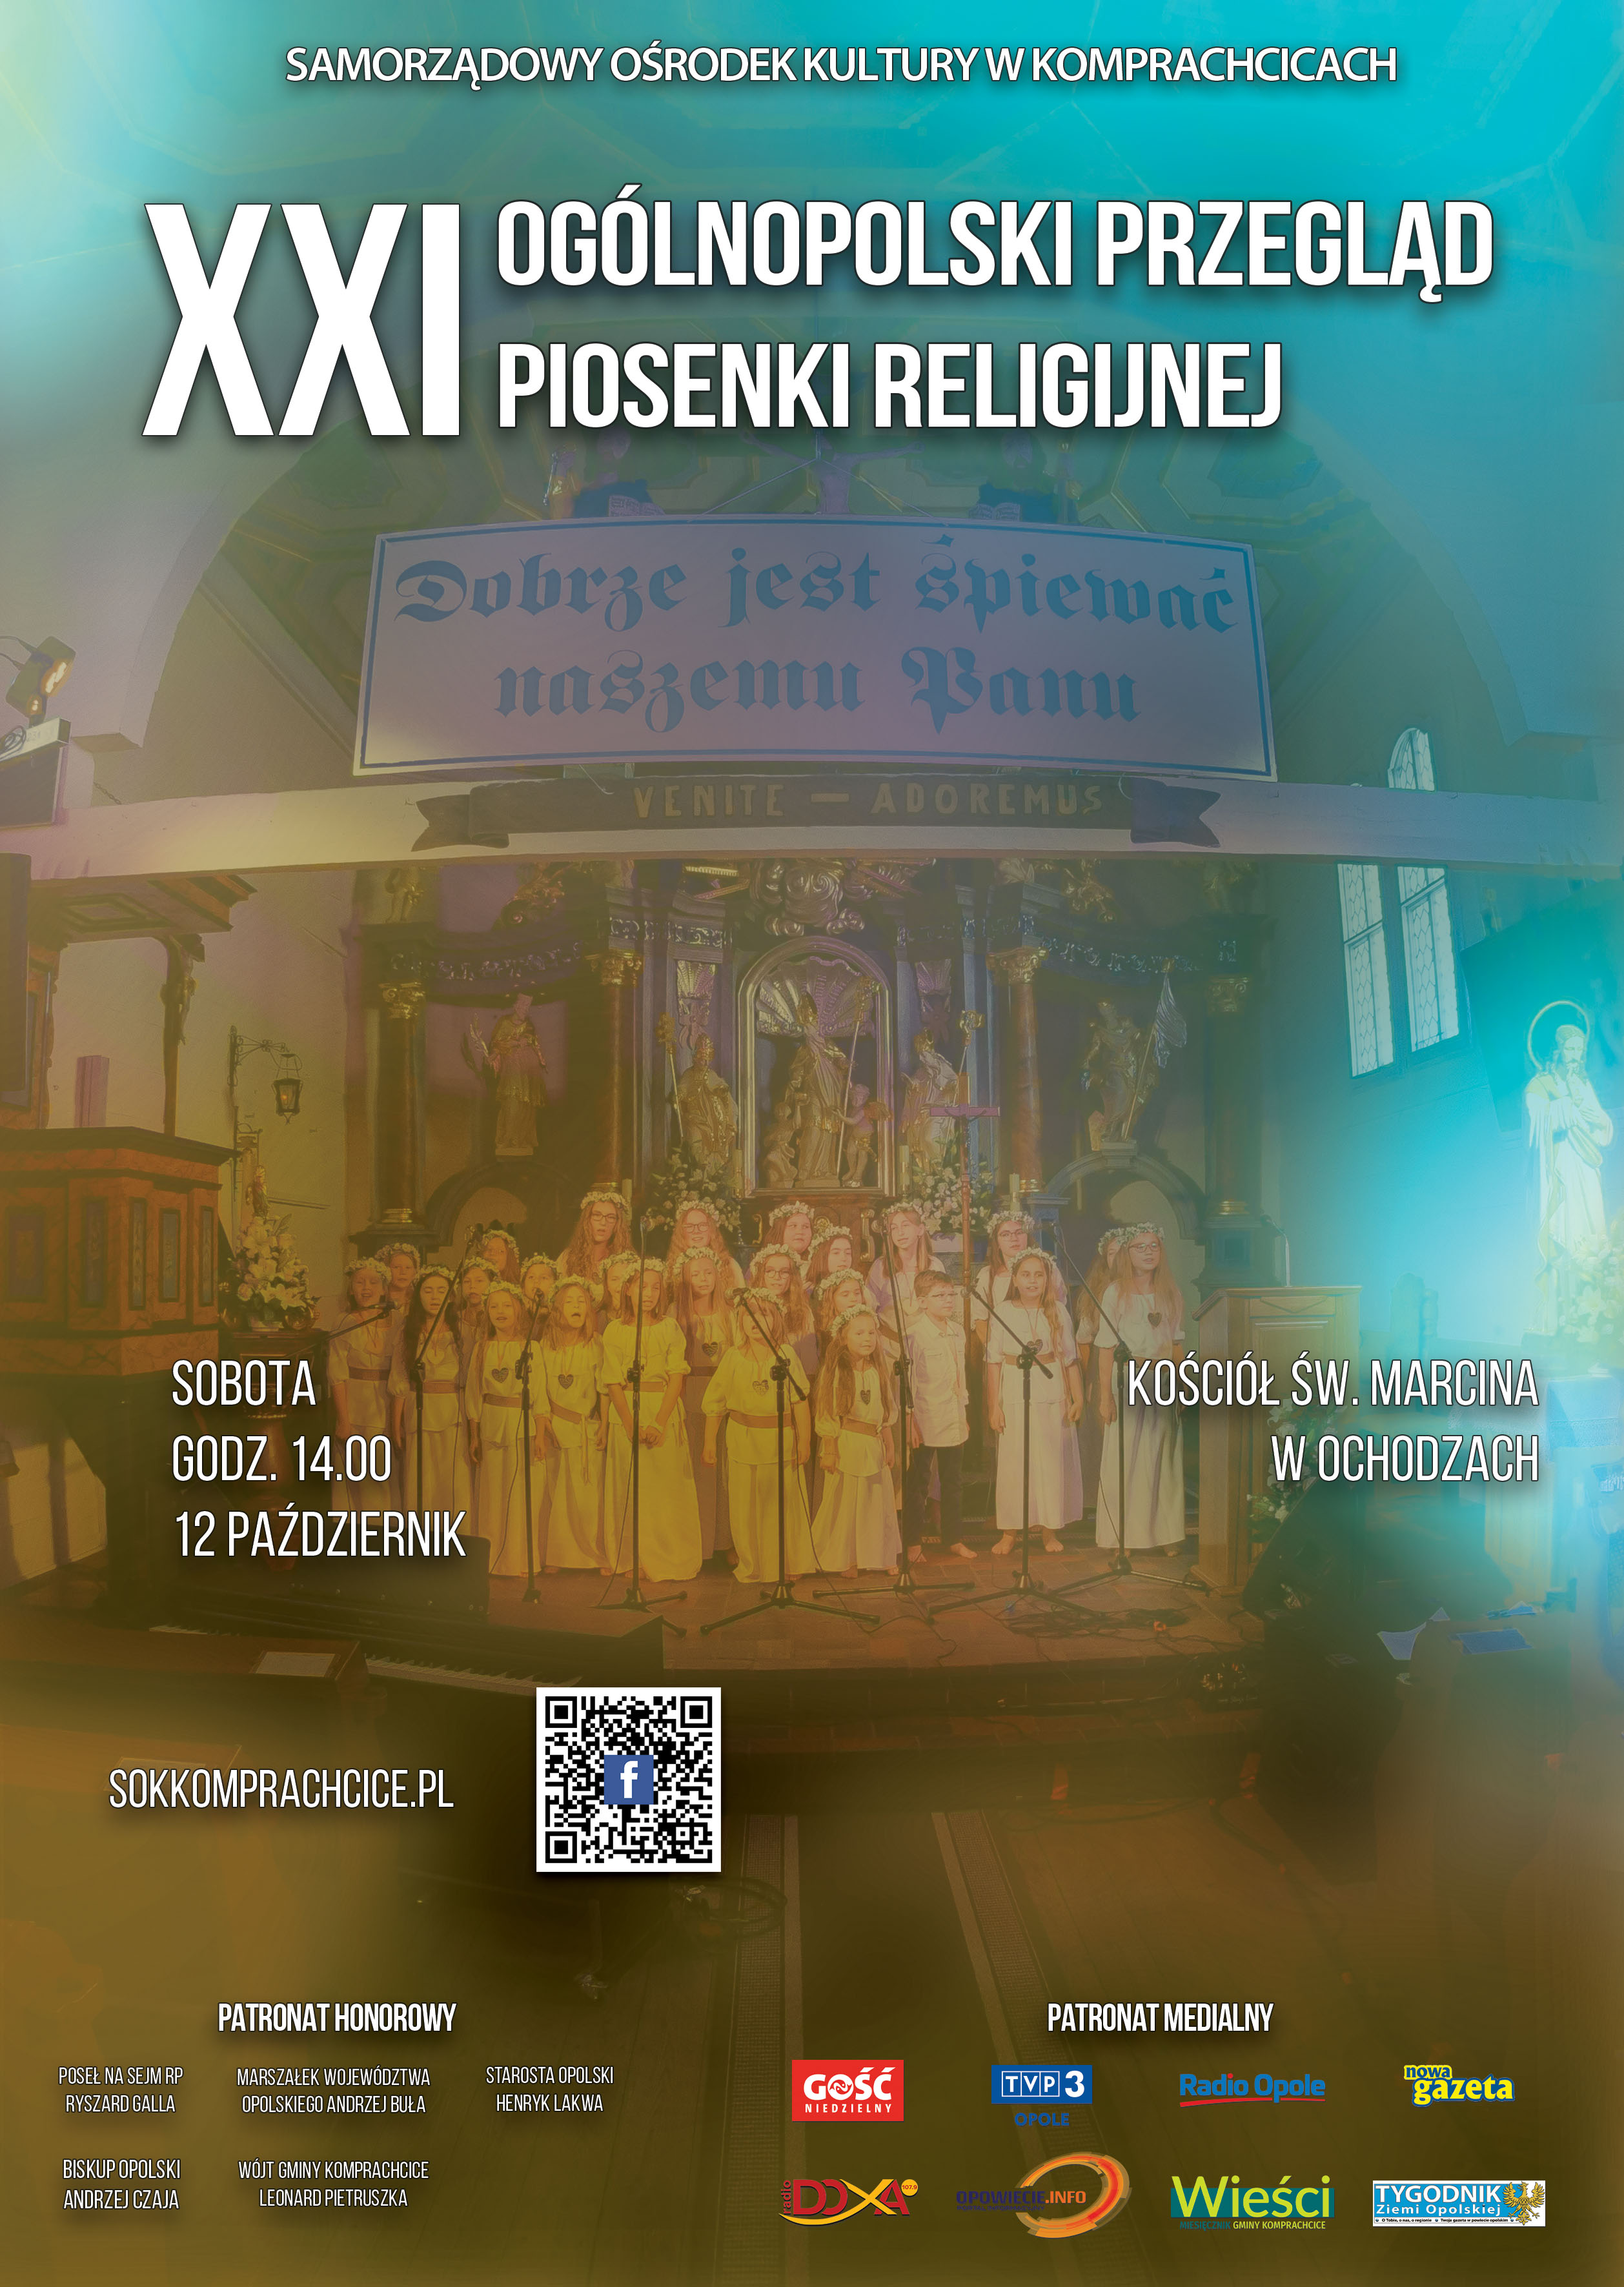 XXI Ogólnopolski Przegląd Piosenki Religijnej w Komprachcicach